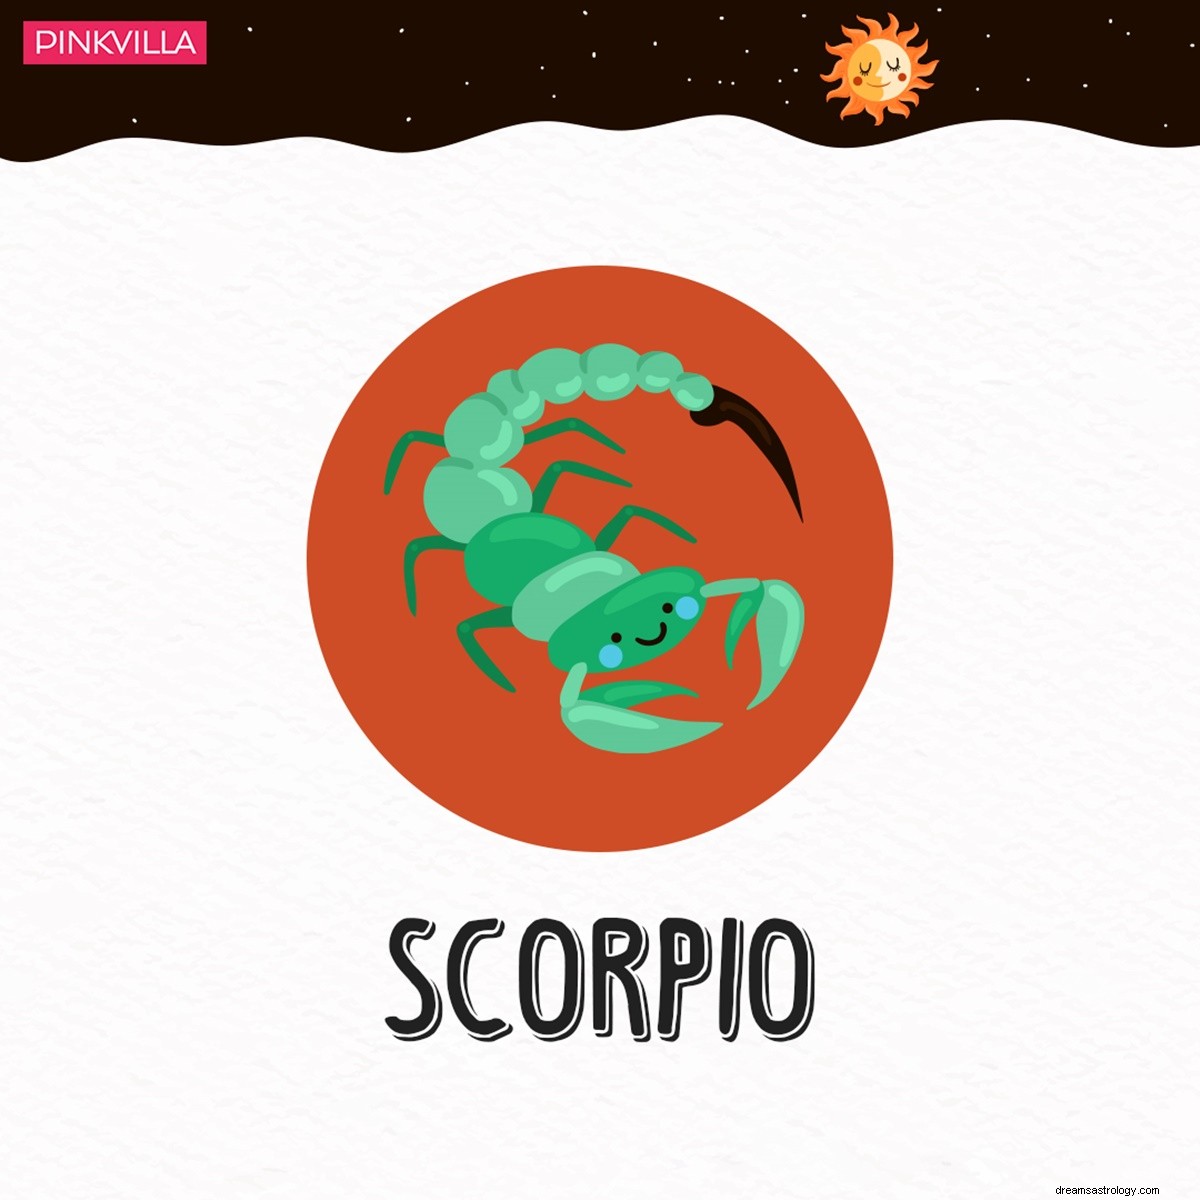 Skorpion till Jungfrun:4 stjärntecken som kan vara kriminella hjärnor 